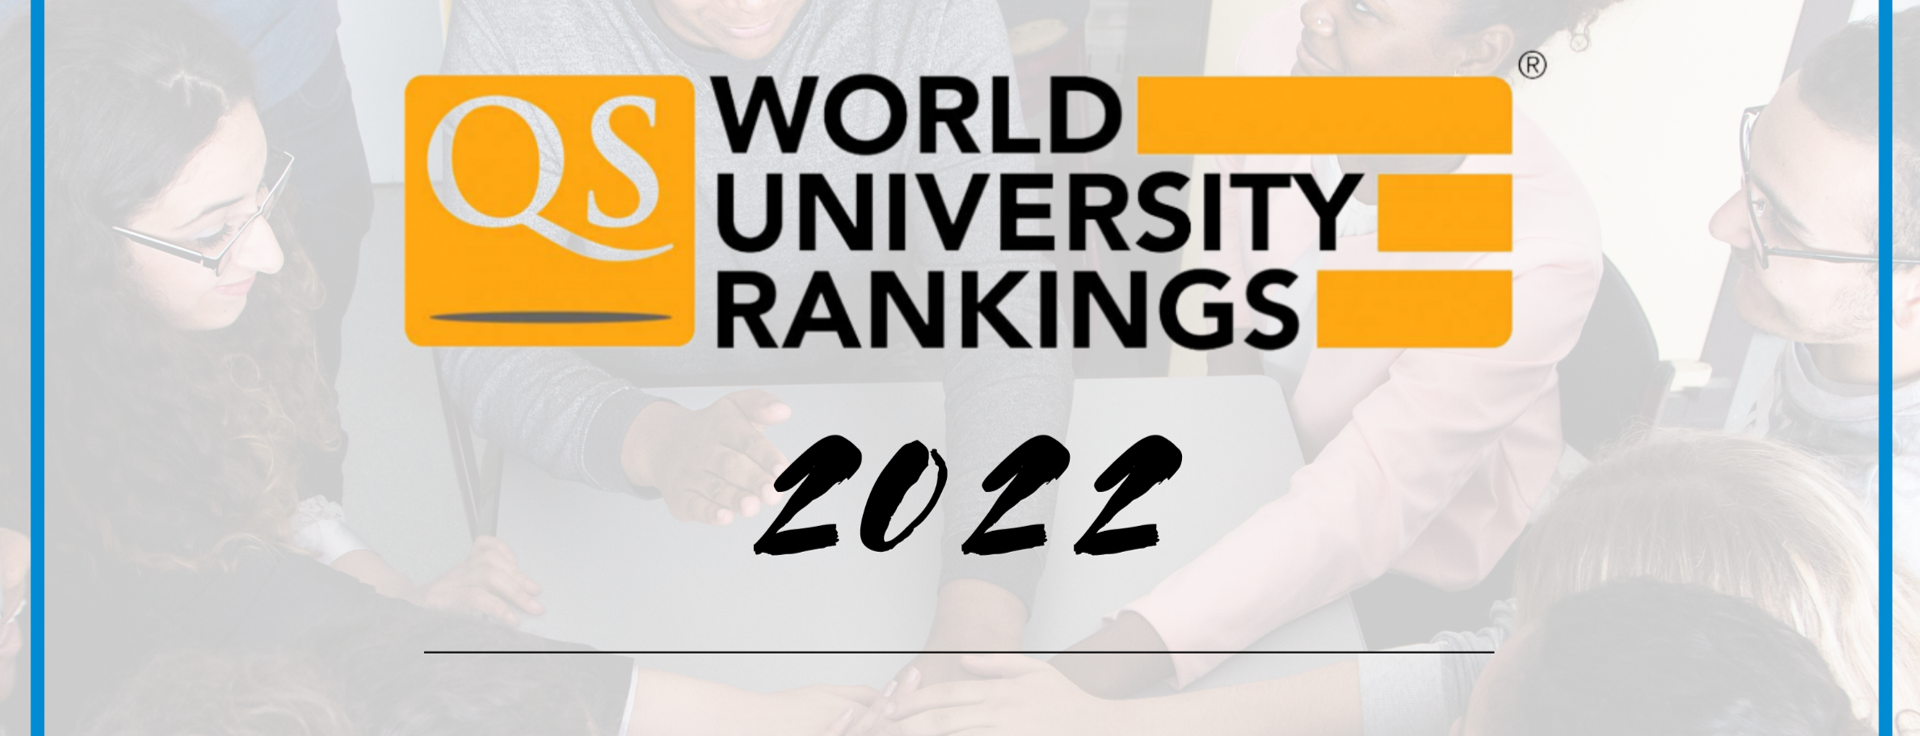 IP Paris dans le Top 50 des universités mondiales pour son premier classement par QS 